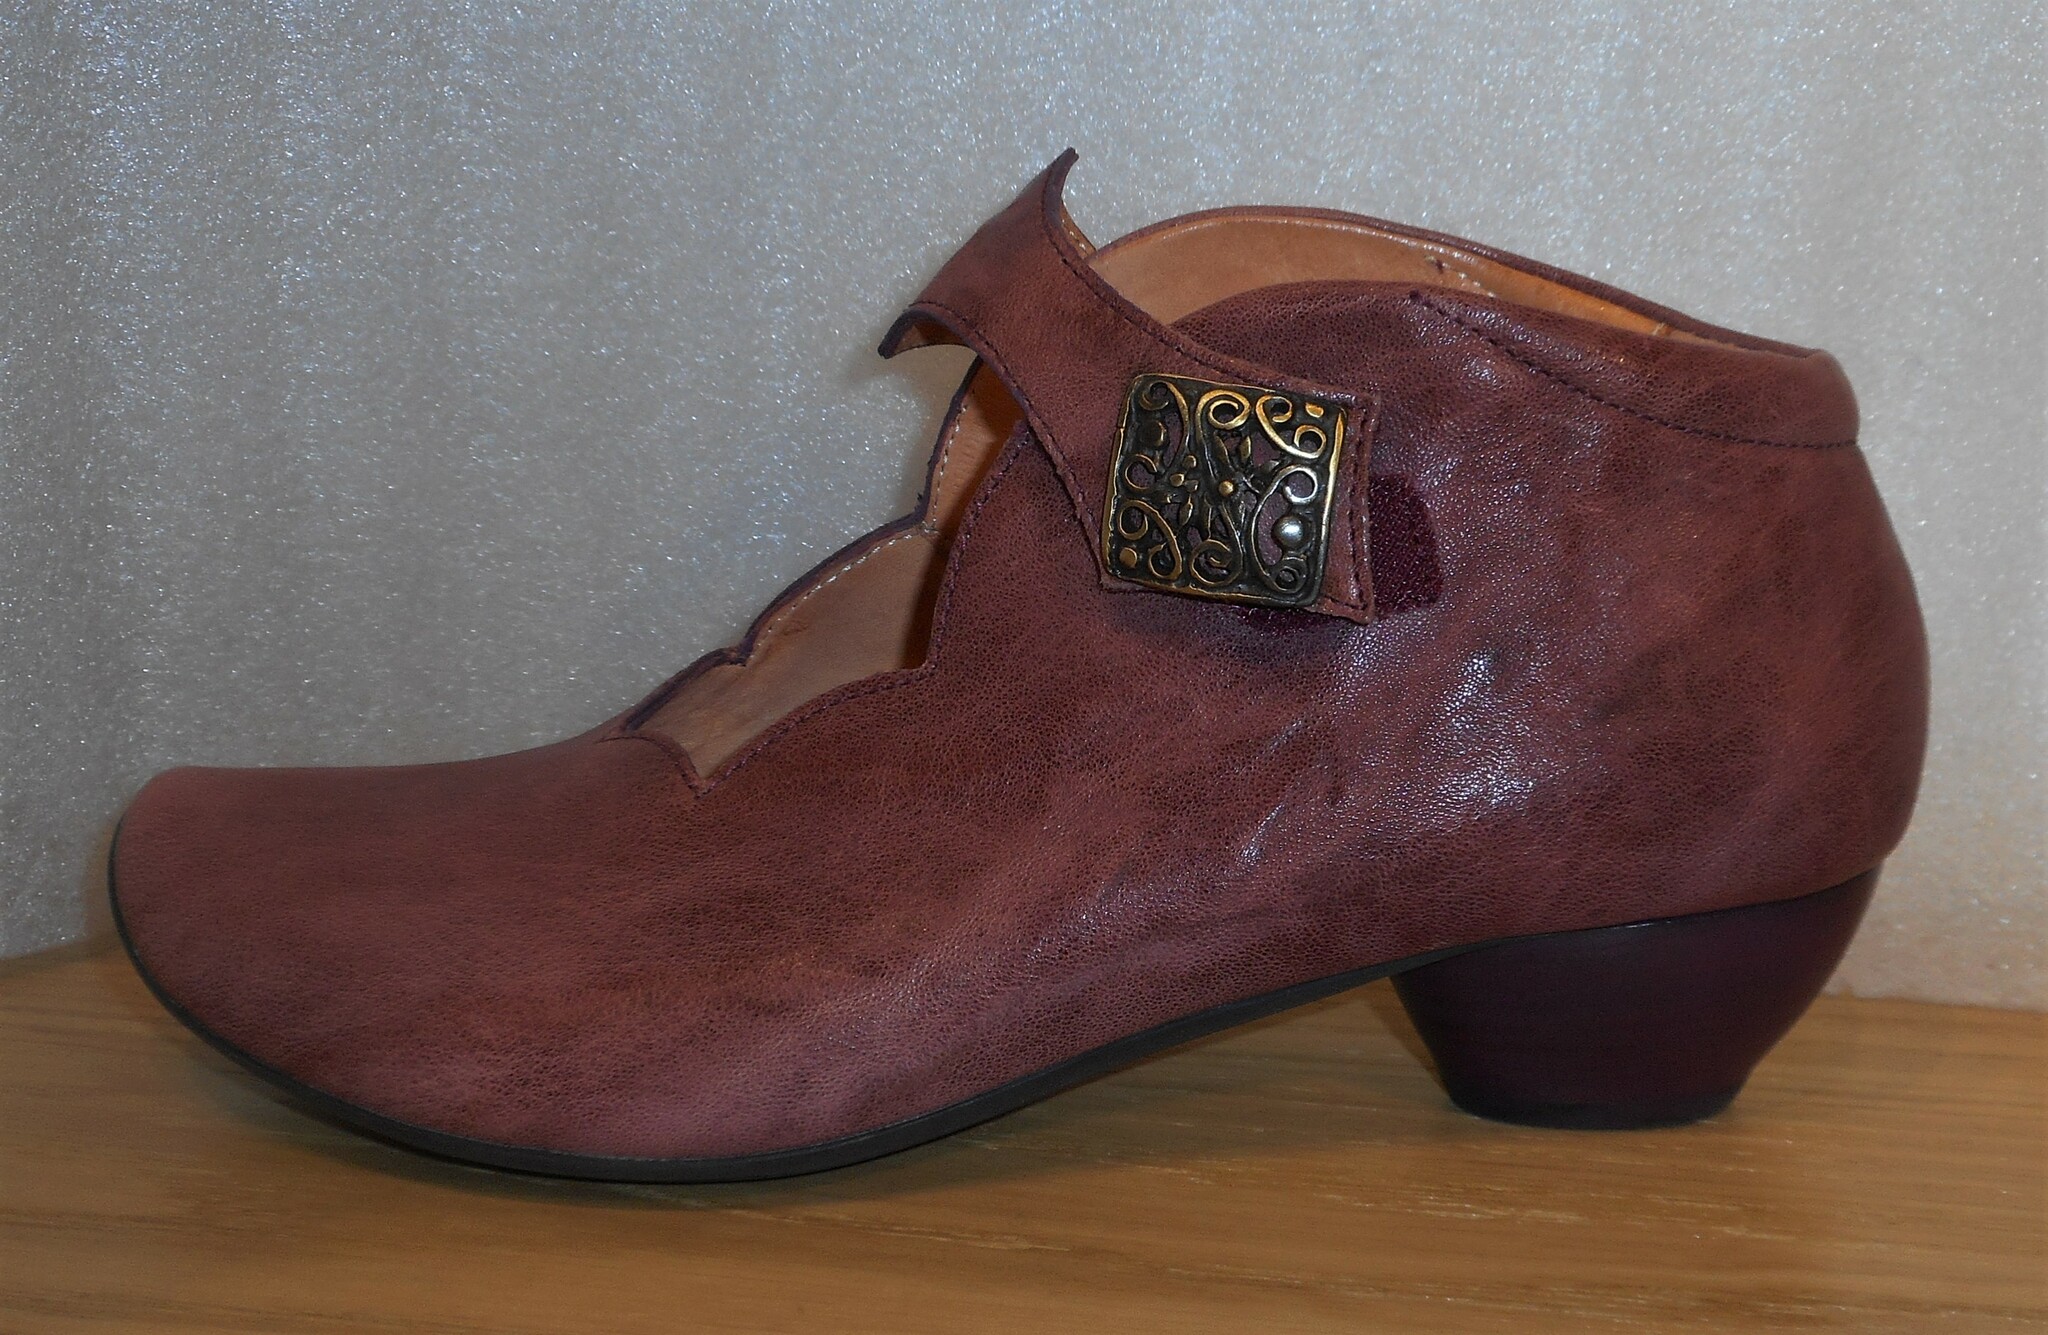 Gammelrosa sko från fabrikat Think!